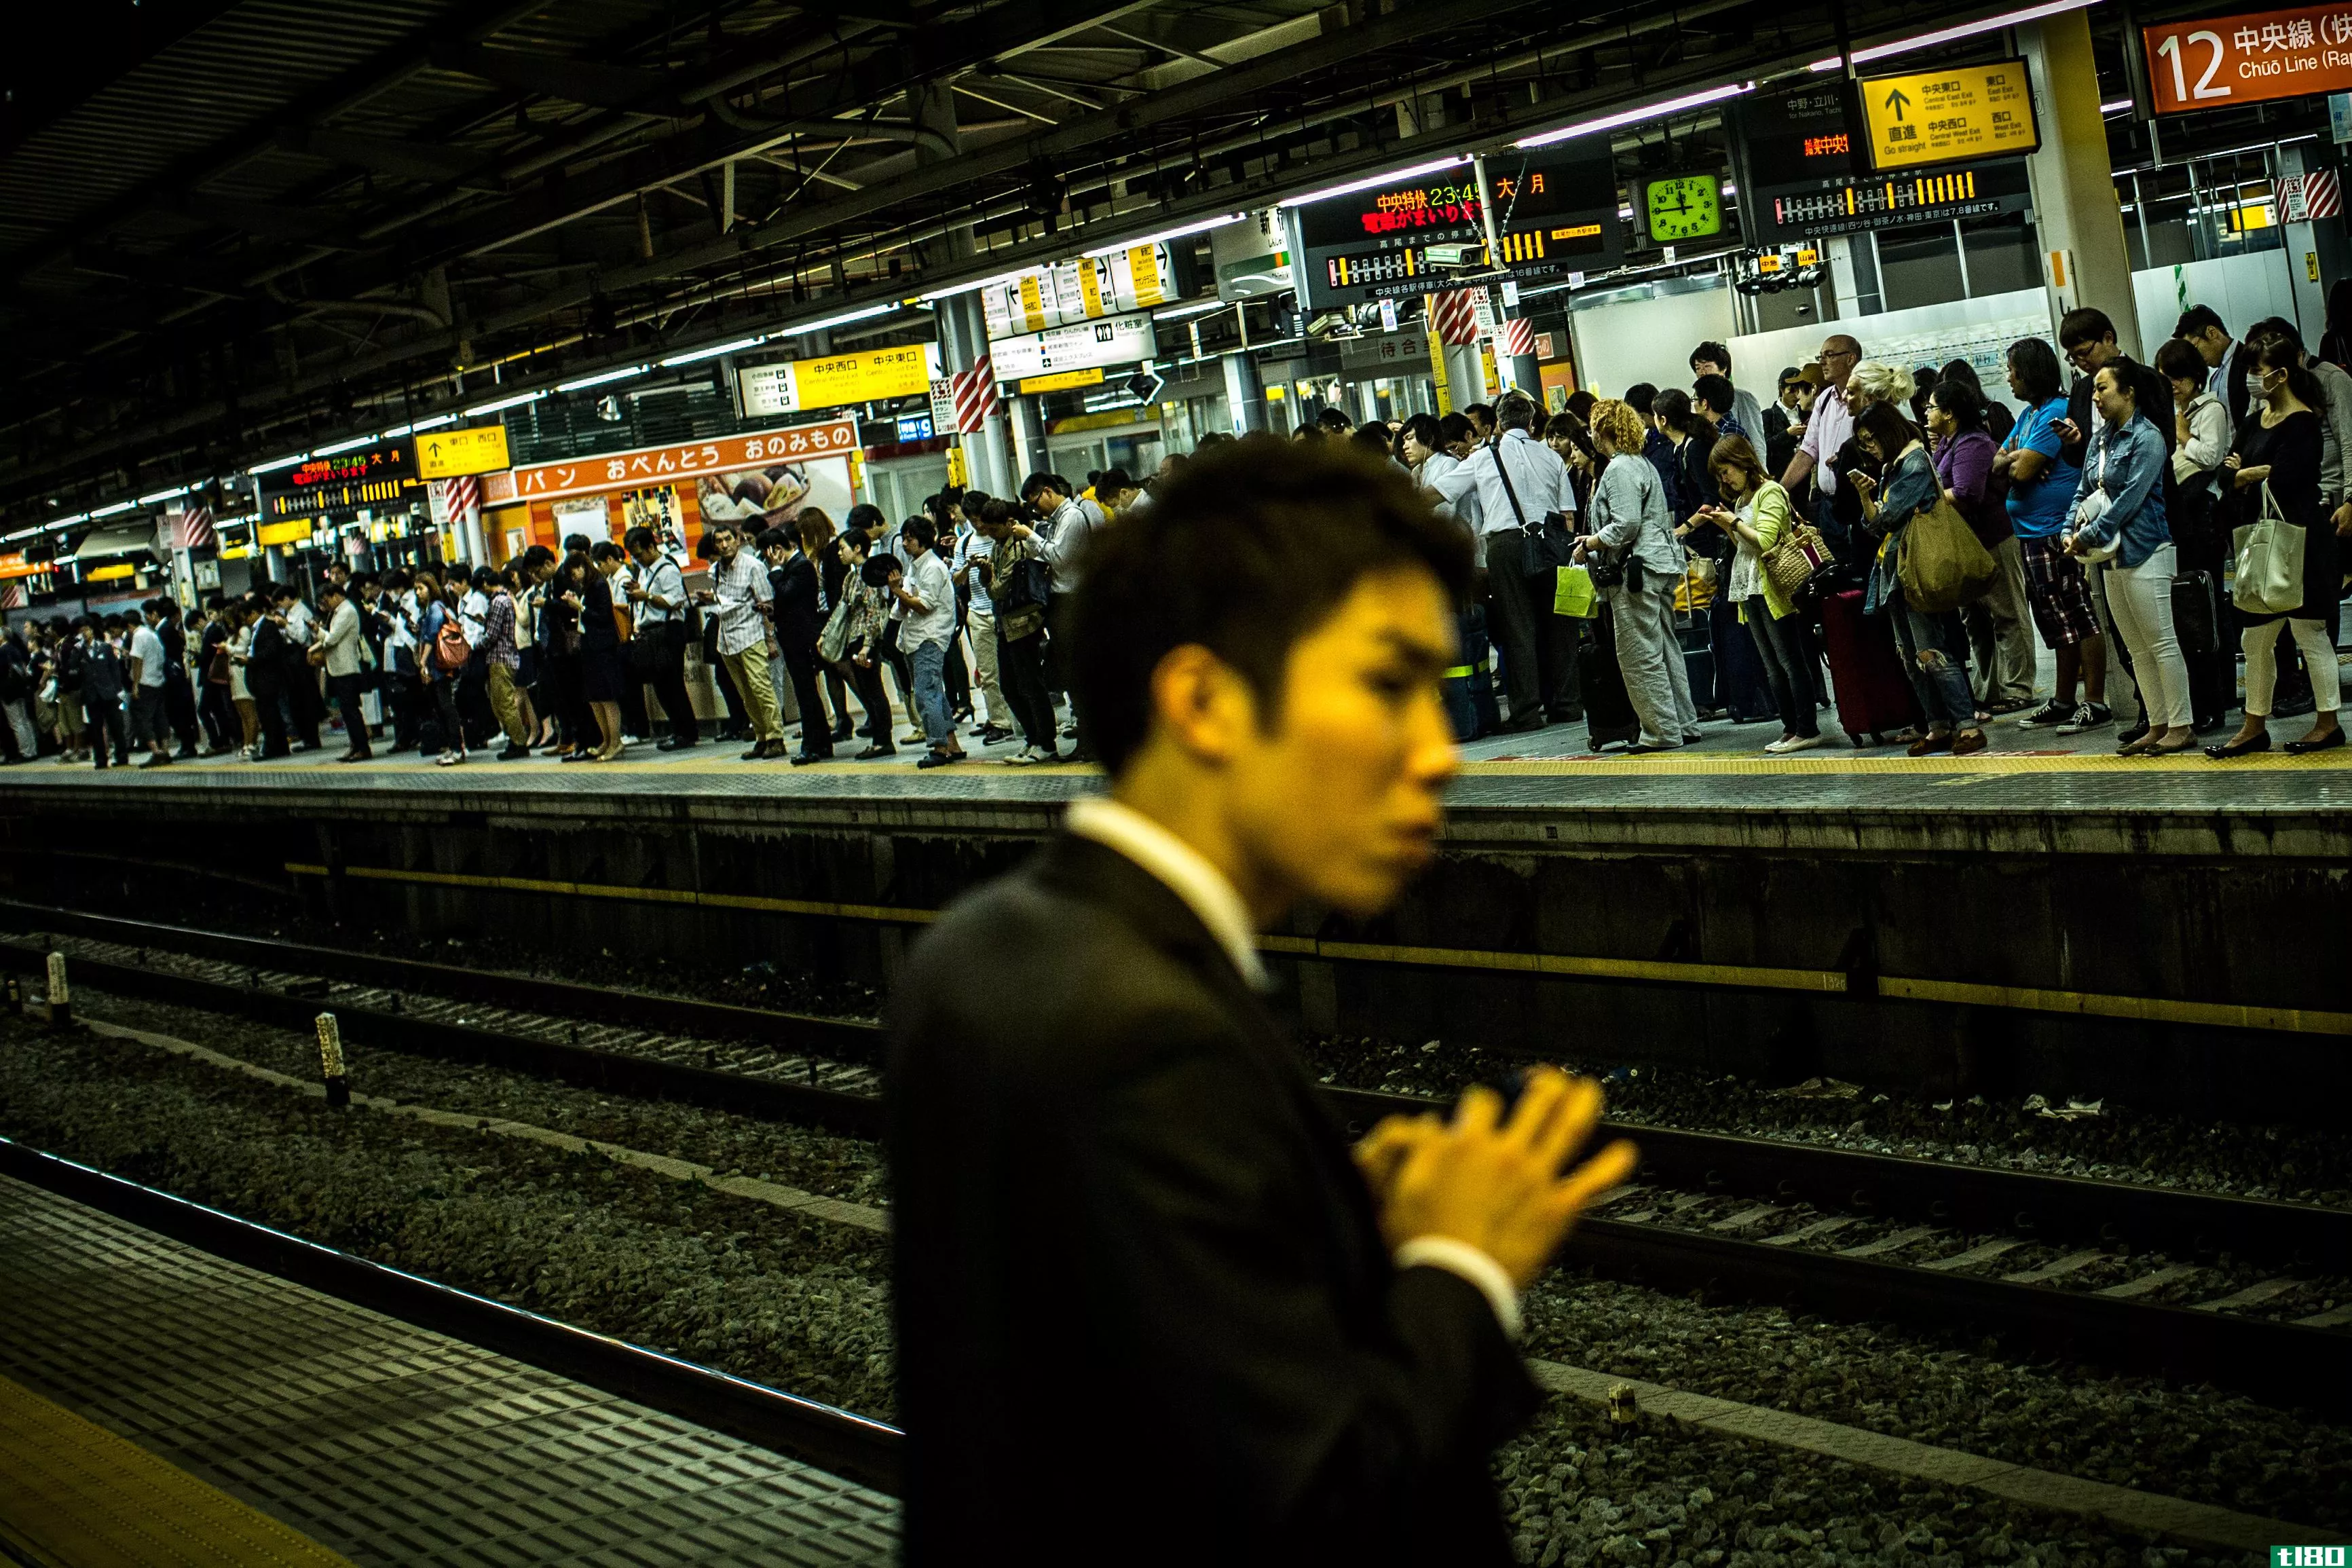 日本铁路摄像机自动发现醉酒的通勤者以挽救他们的生命